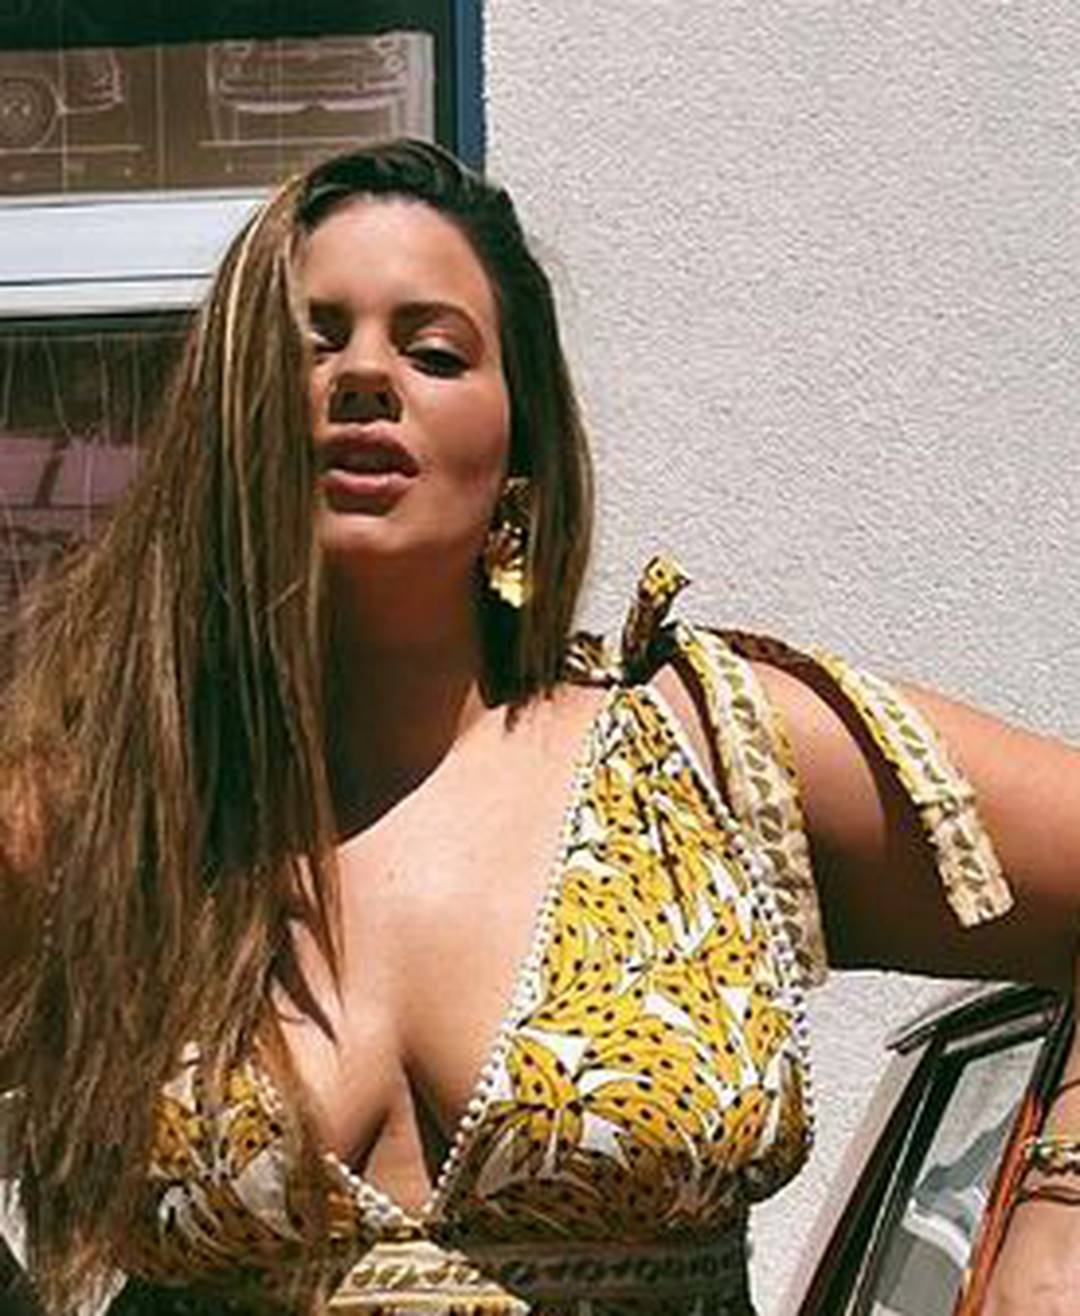 Lucija Lugomer niže zanosne fotke u bikiniju, pratitelji je pohvalili za odvažnost: 'Sjajiš'